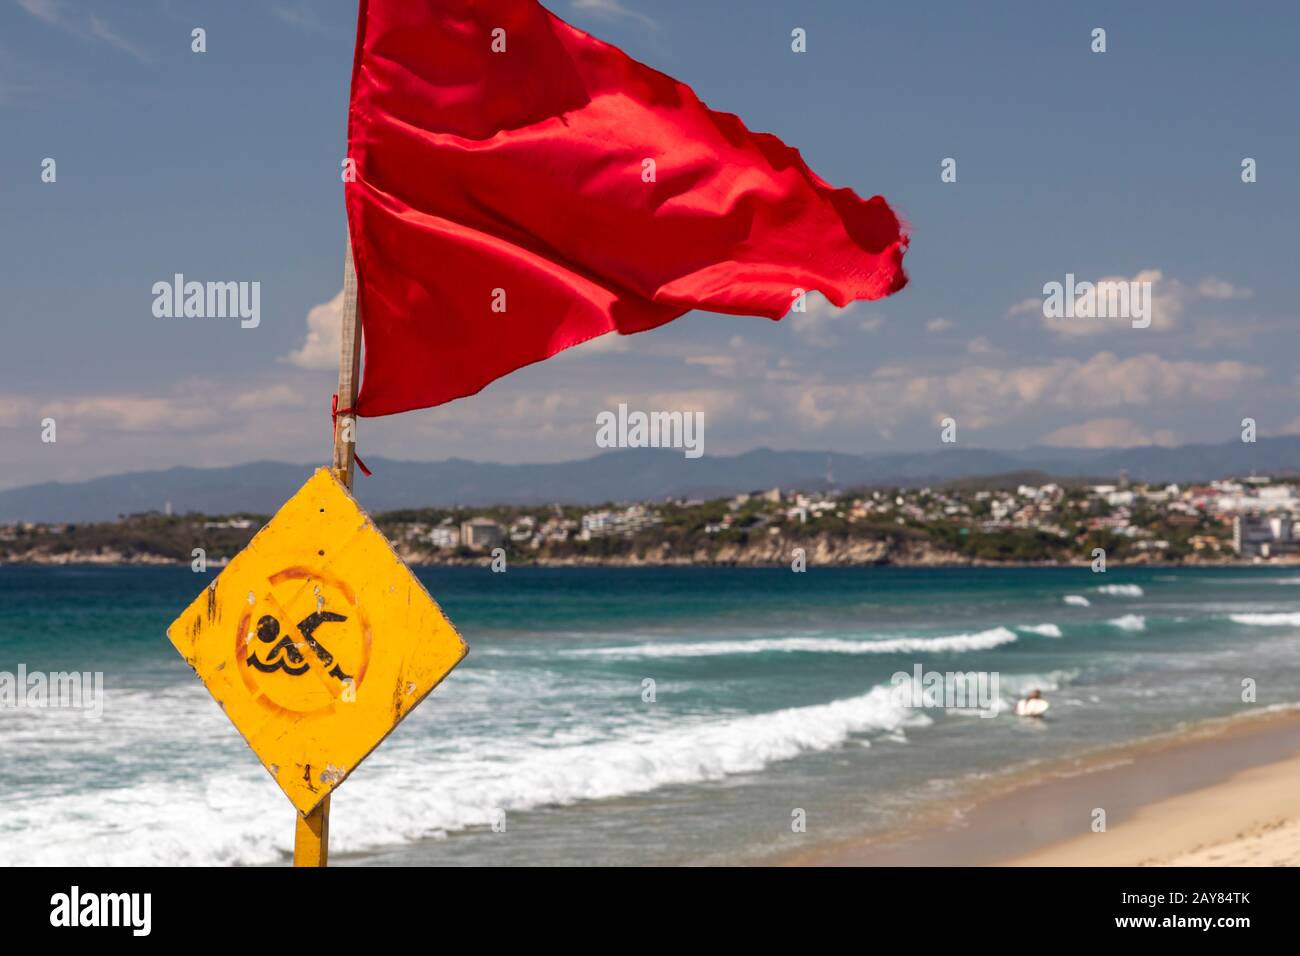 Leuchtende rote Warnfahne am unberührten Leblon-Strand mit Meer im